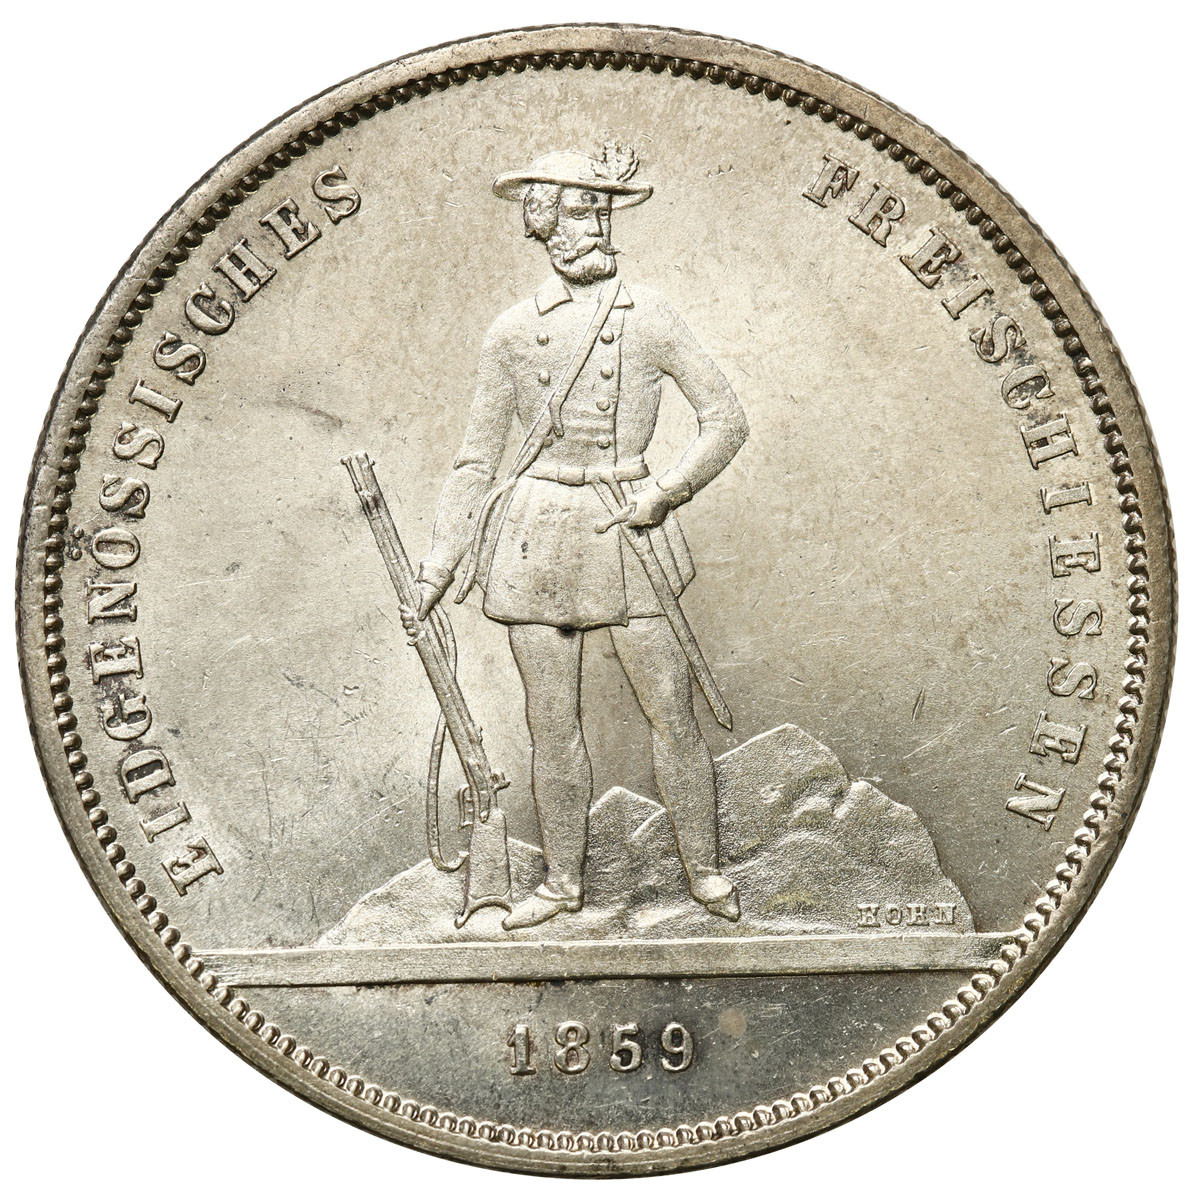 Szwajcaria. 5 franków strzeleckie 1859, Zurich - PIĘKNE